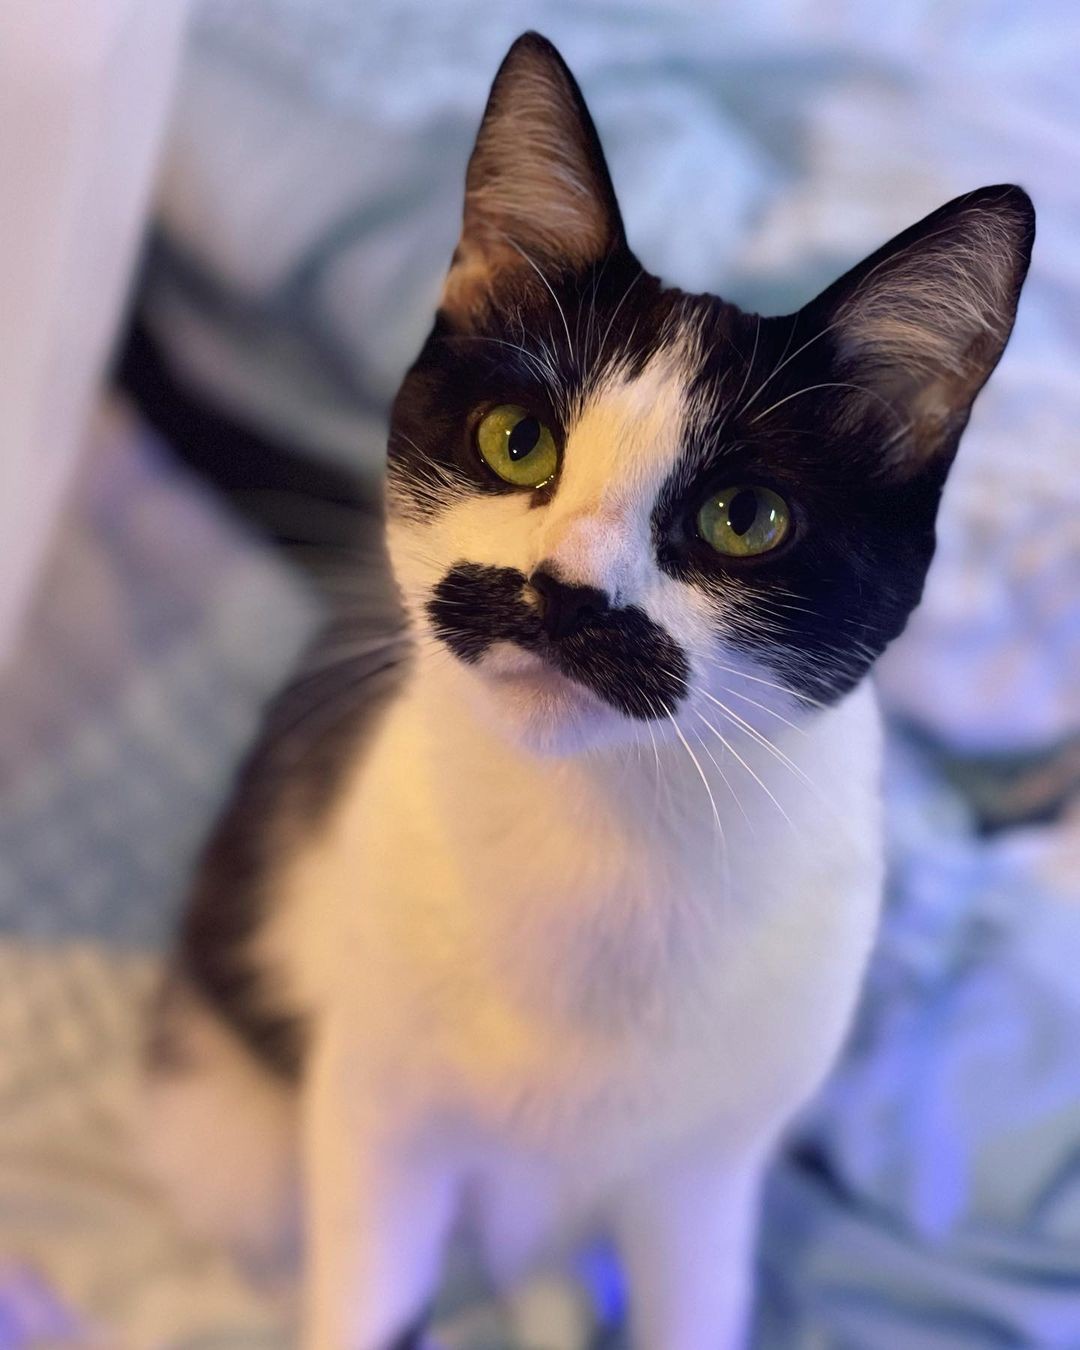 Gato conquista internet após internautas o compararem com Freddie Mercury  (Foto: Reprodução / Instagram)